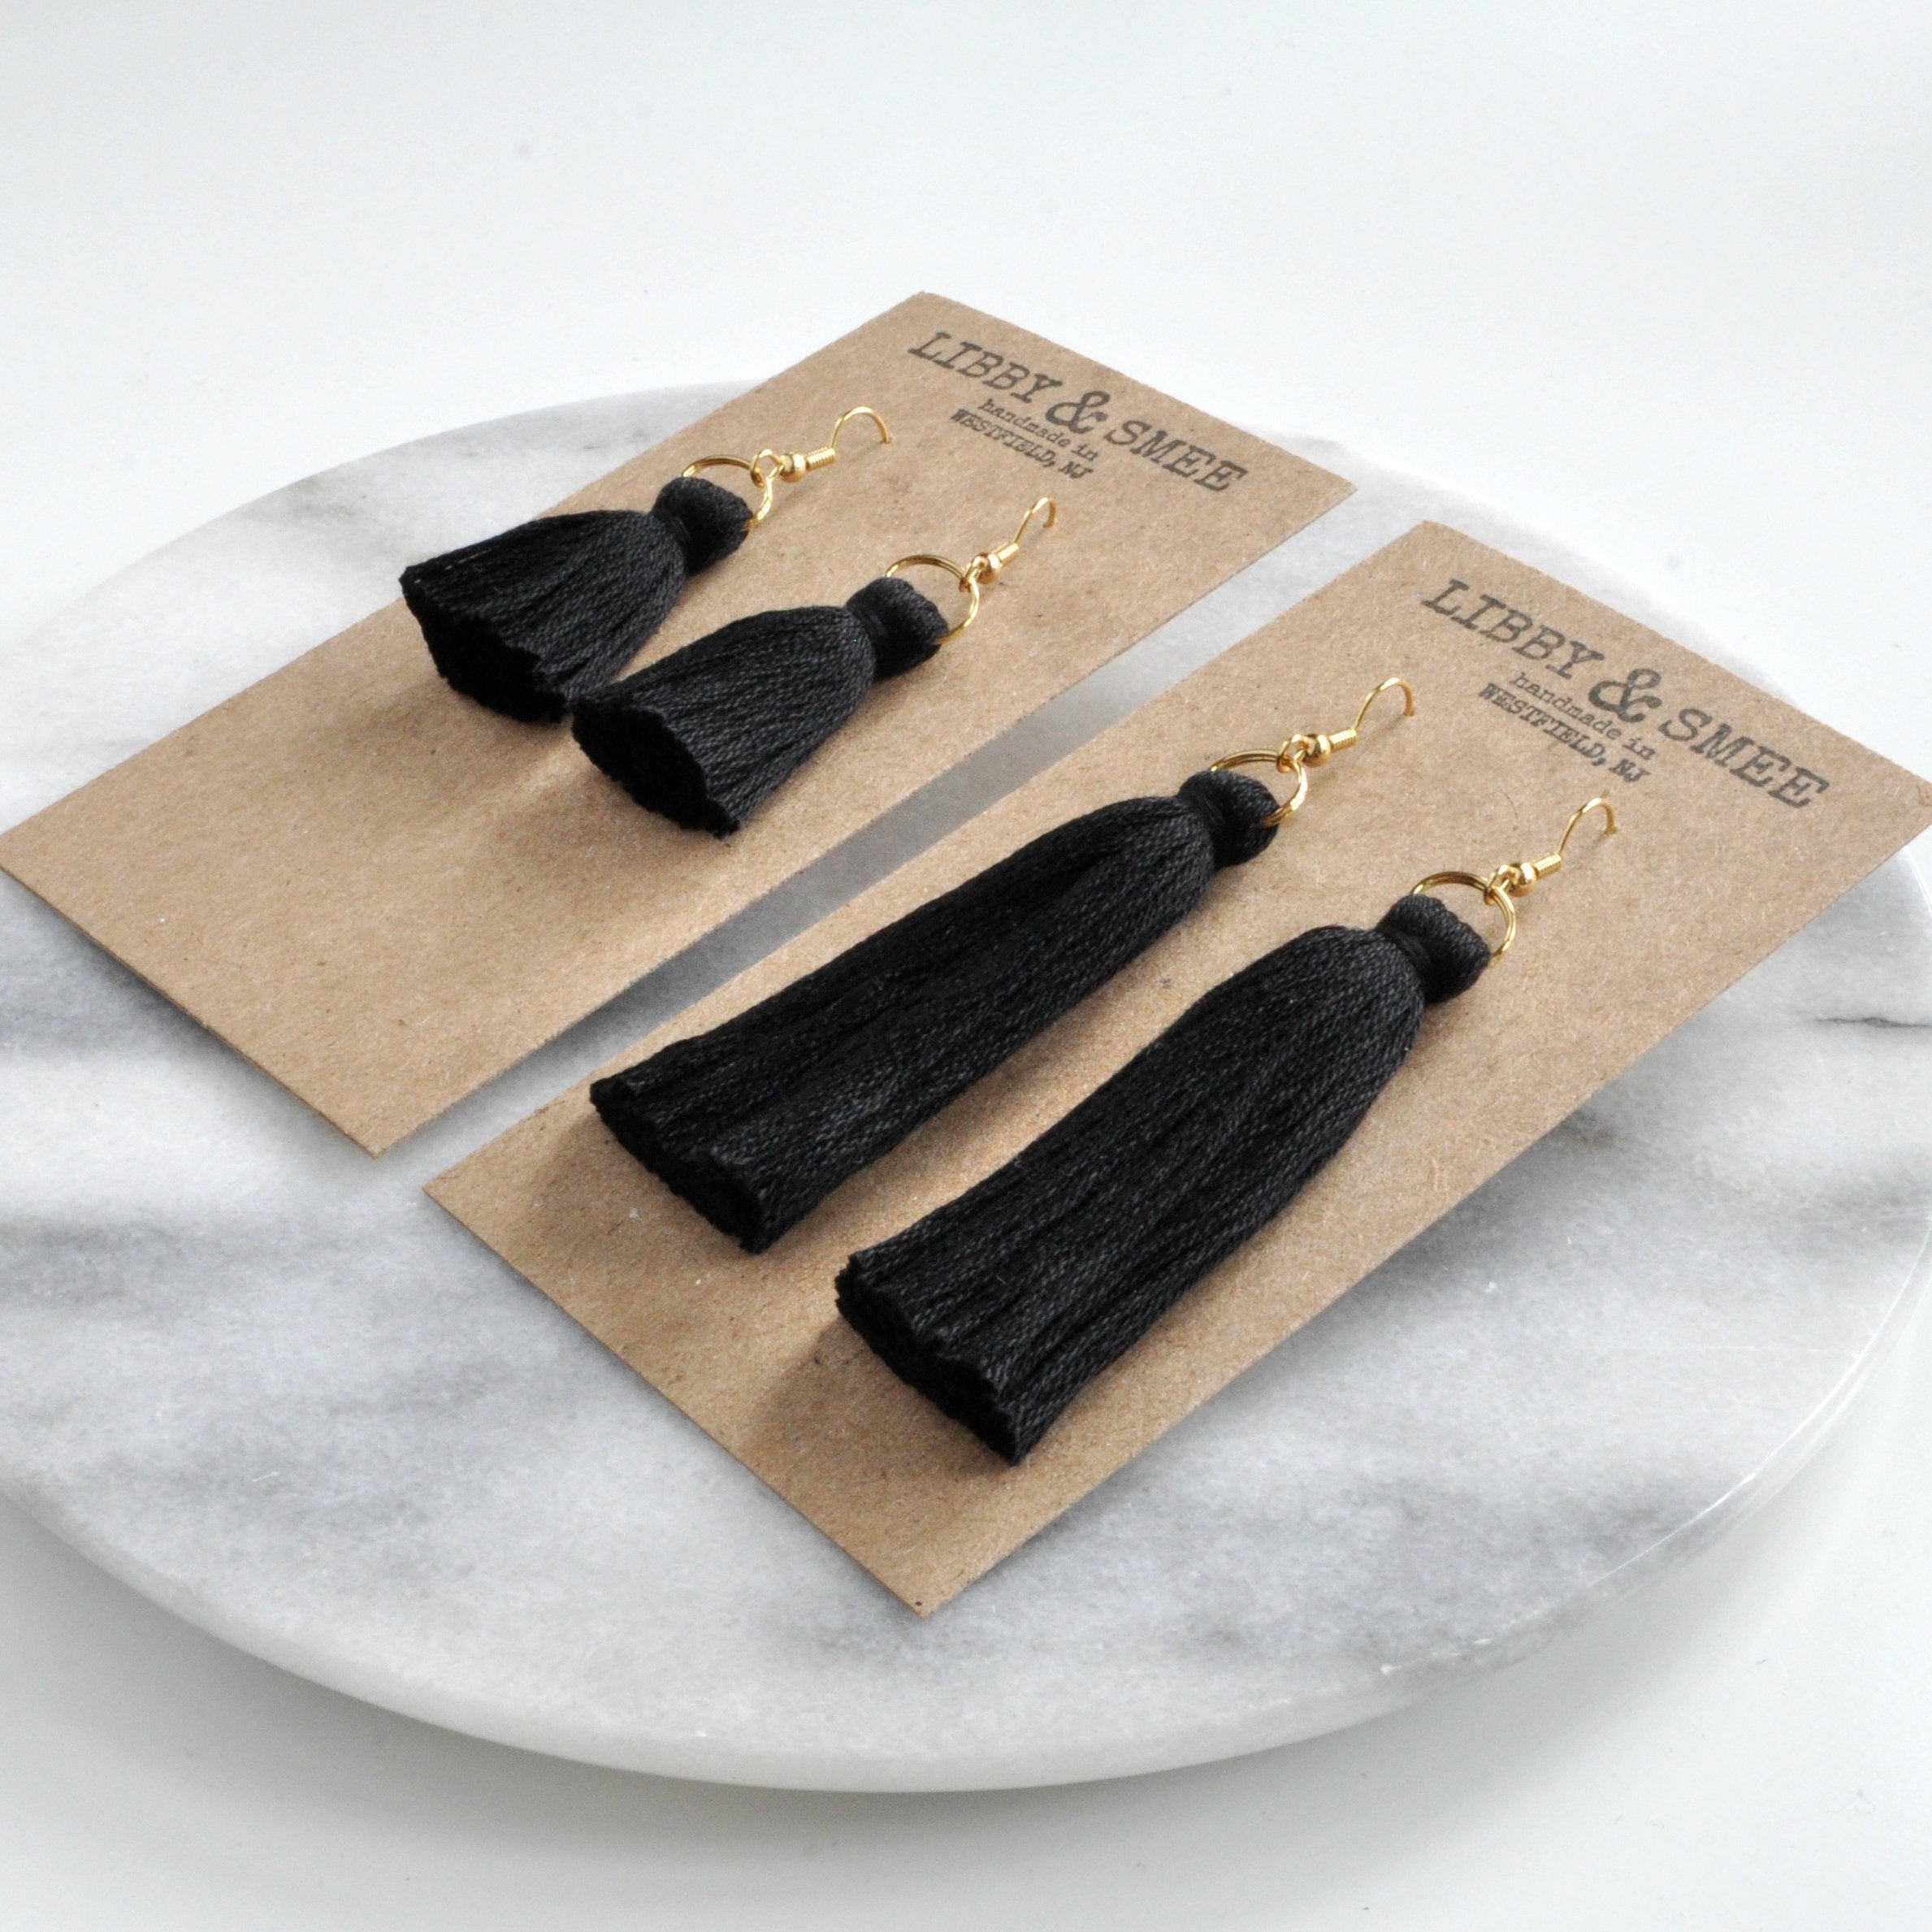 Libby & Smee black tassel earrings in mini and long, still life on kraft earring cards, s angleide